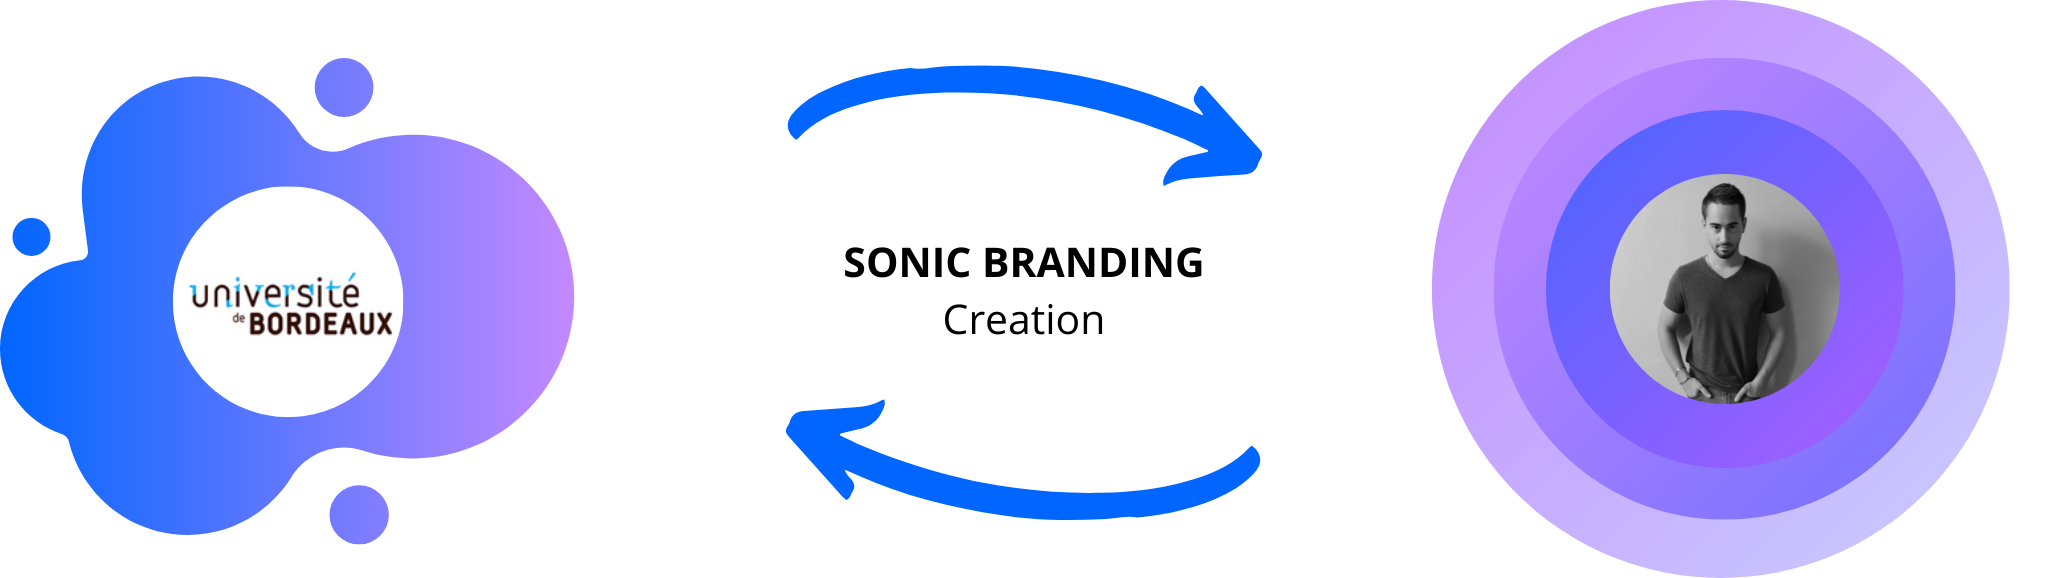 Creation of sonic branding of université de bordeaux